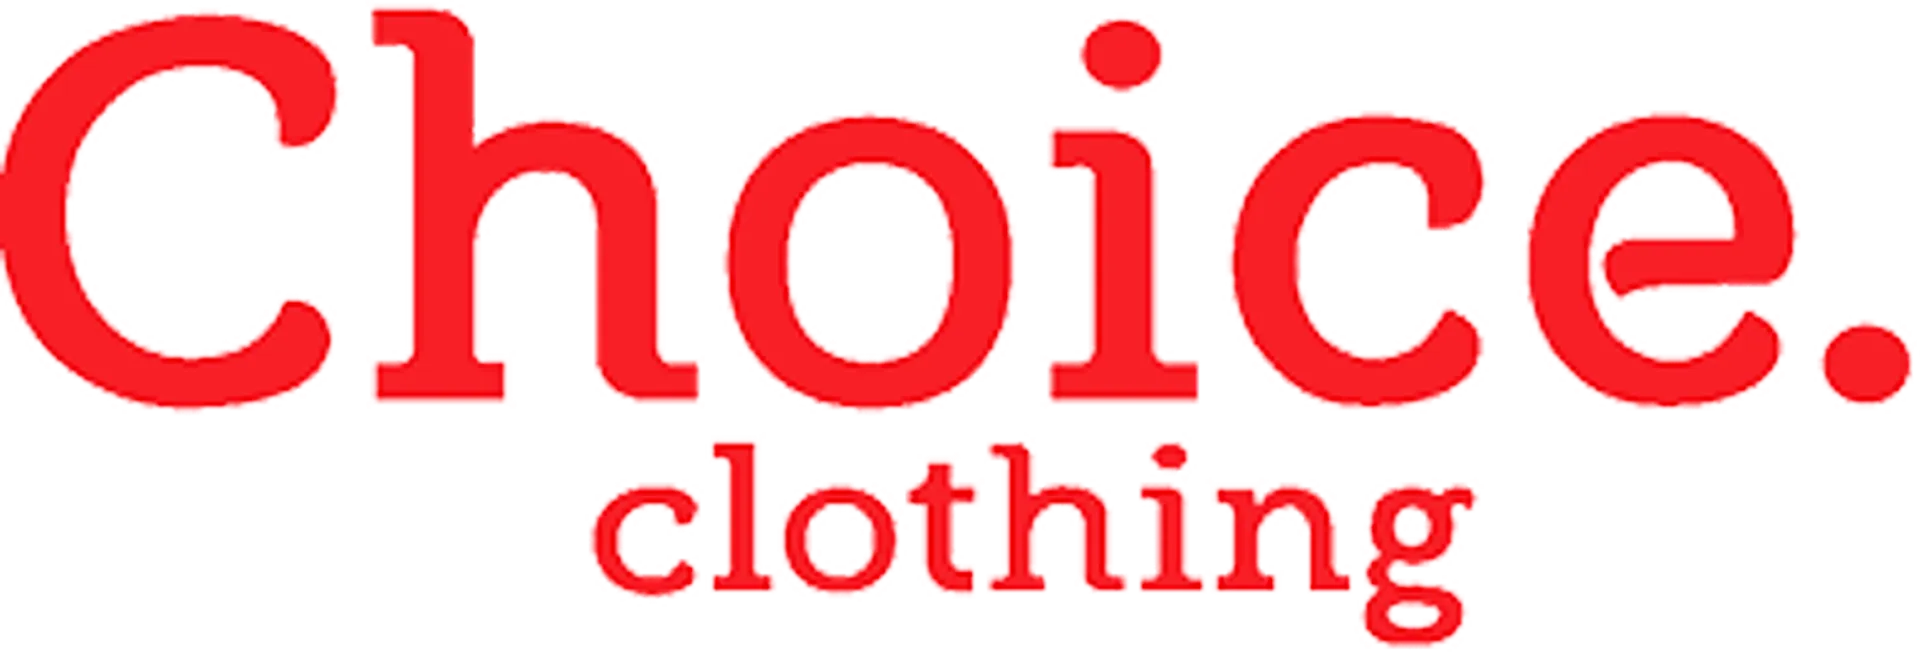 CHOICE CLOTHING logo